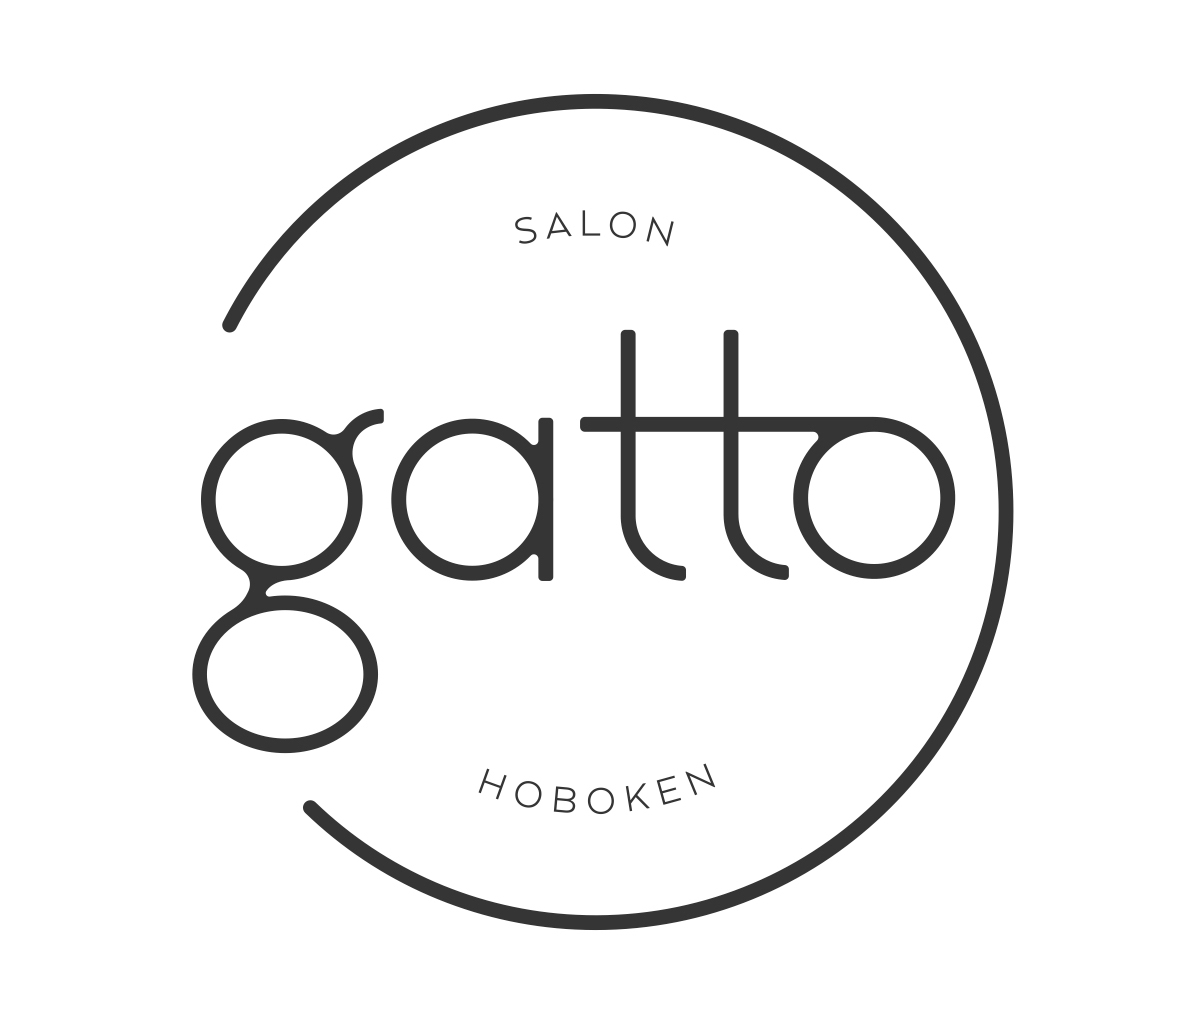 hoboken-girl-blog=salon-gatto-logo